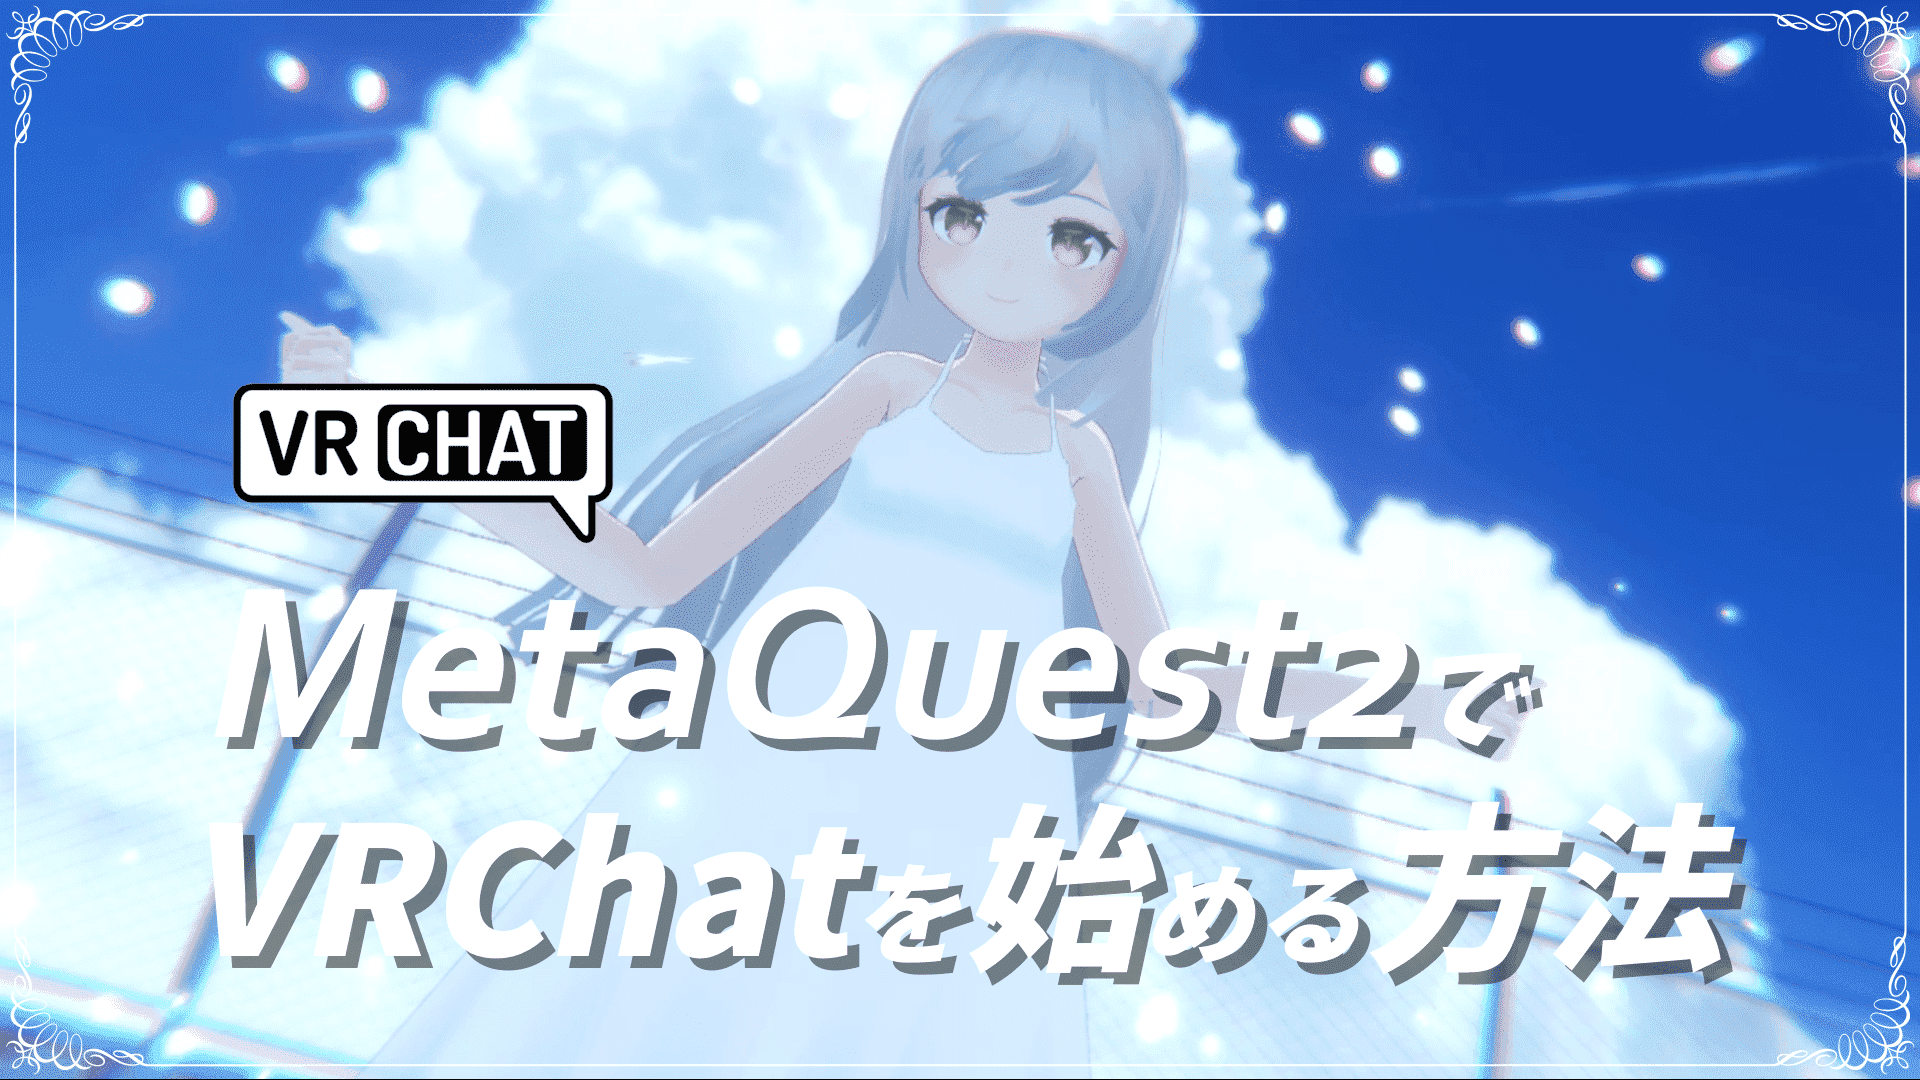 【Quest版VRChat】MetaQuest2単体でVRChatを始める方法